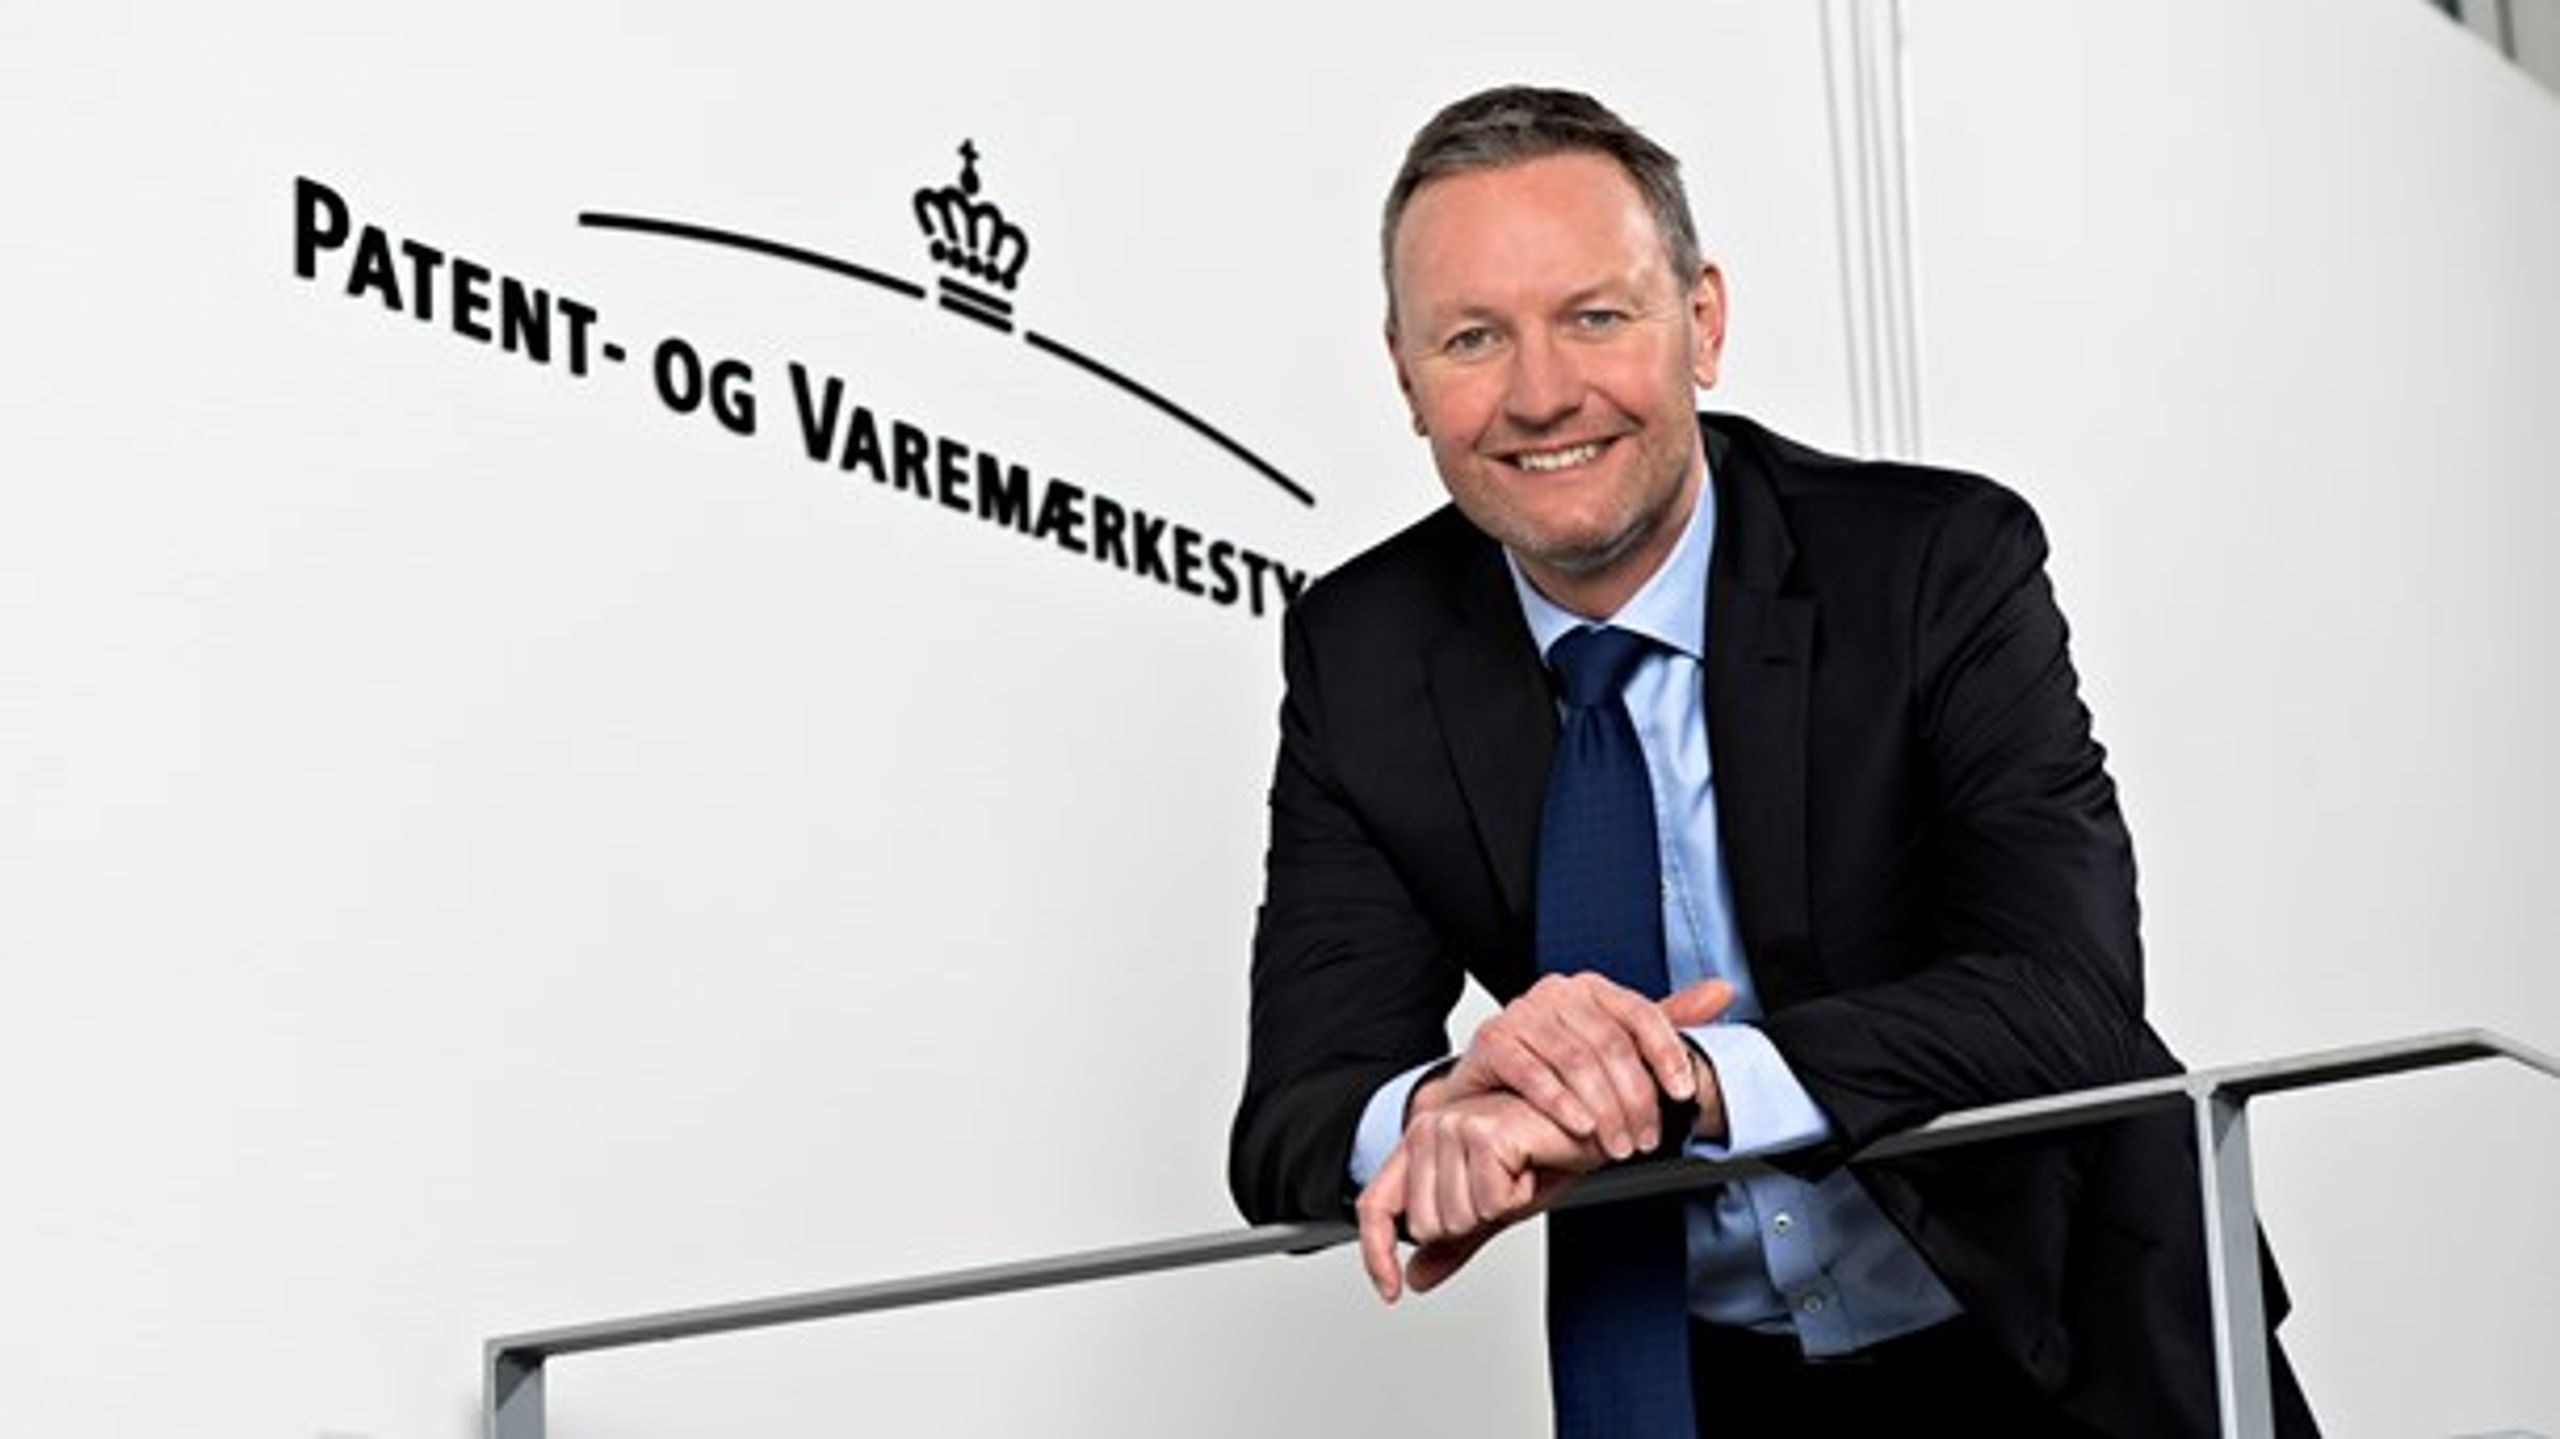 Sune Stampe Sørensen blev i oktober 2017 direktør for Patent- og Varemærkestyrelsen. Han kom fra en stilling som afdelingschef i Miljø- og Fødevareministeriet.